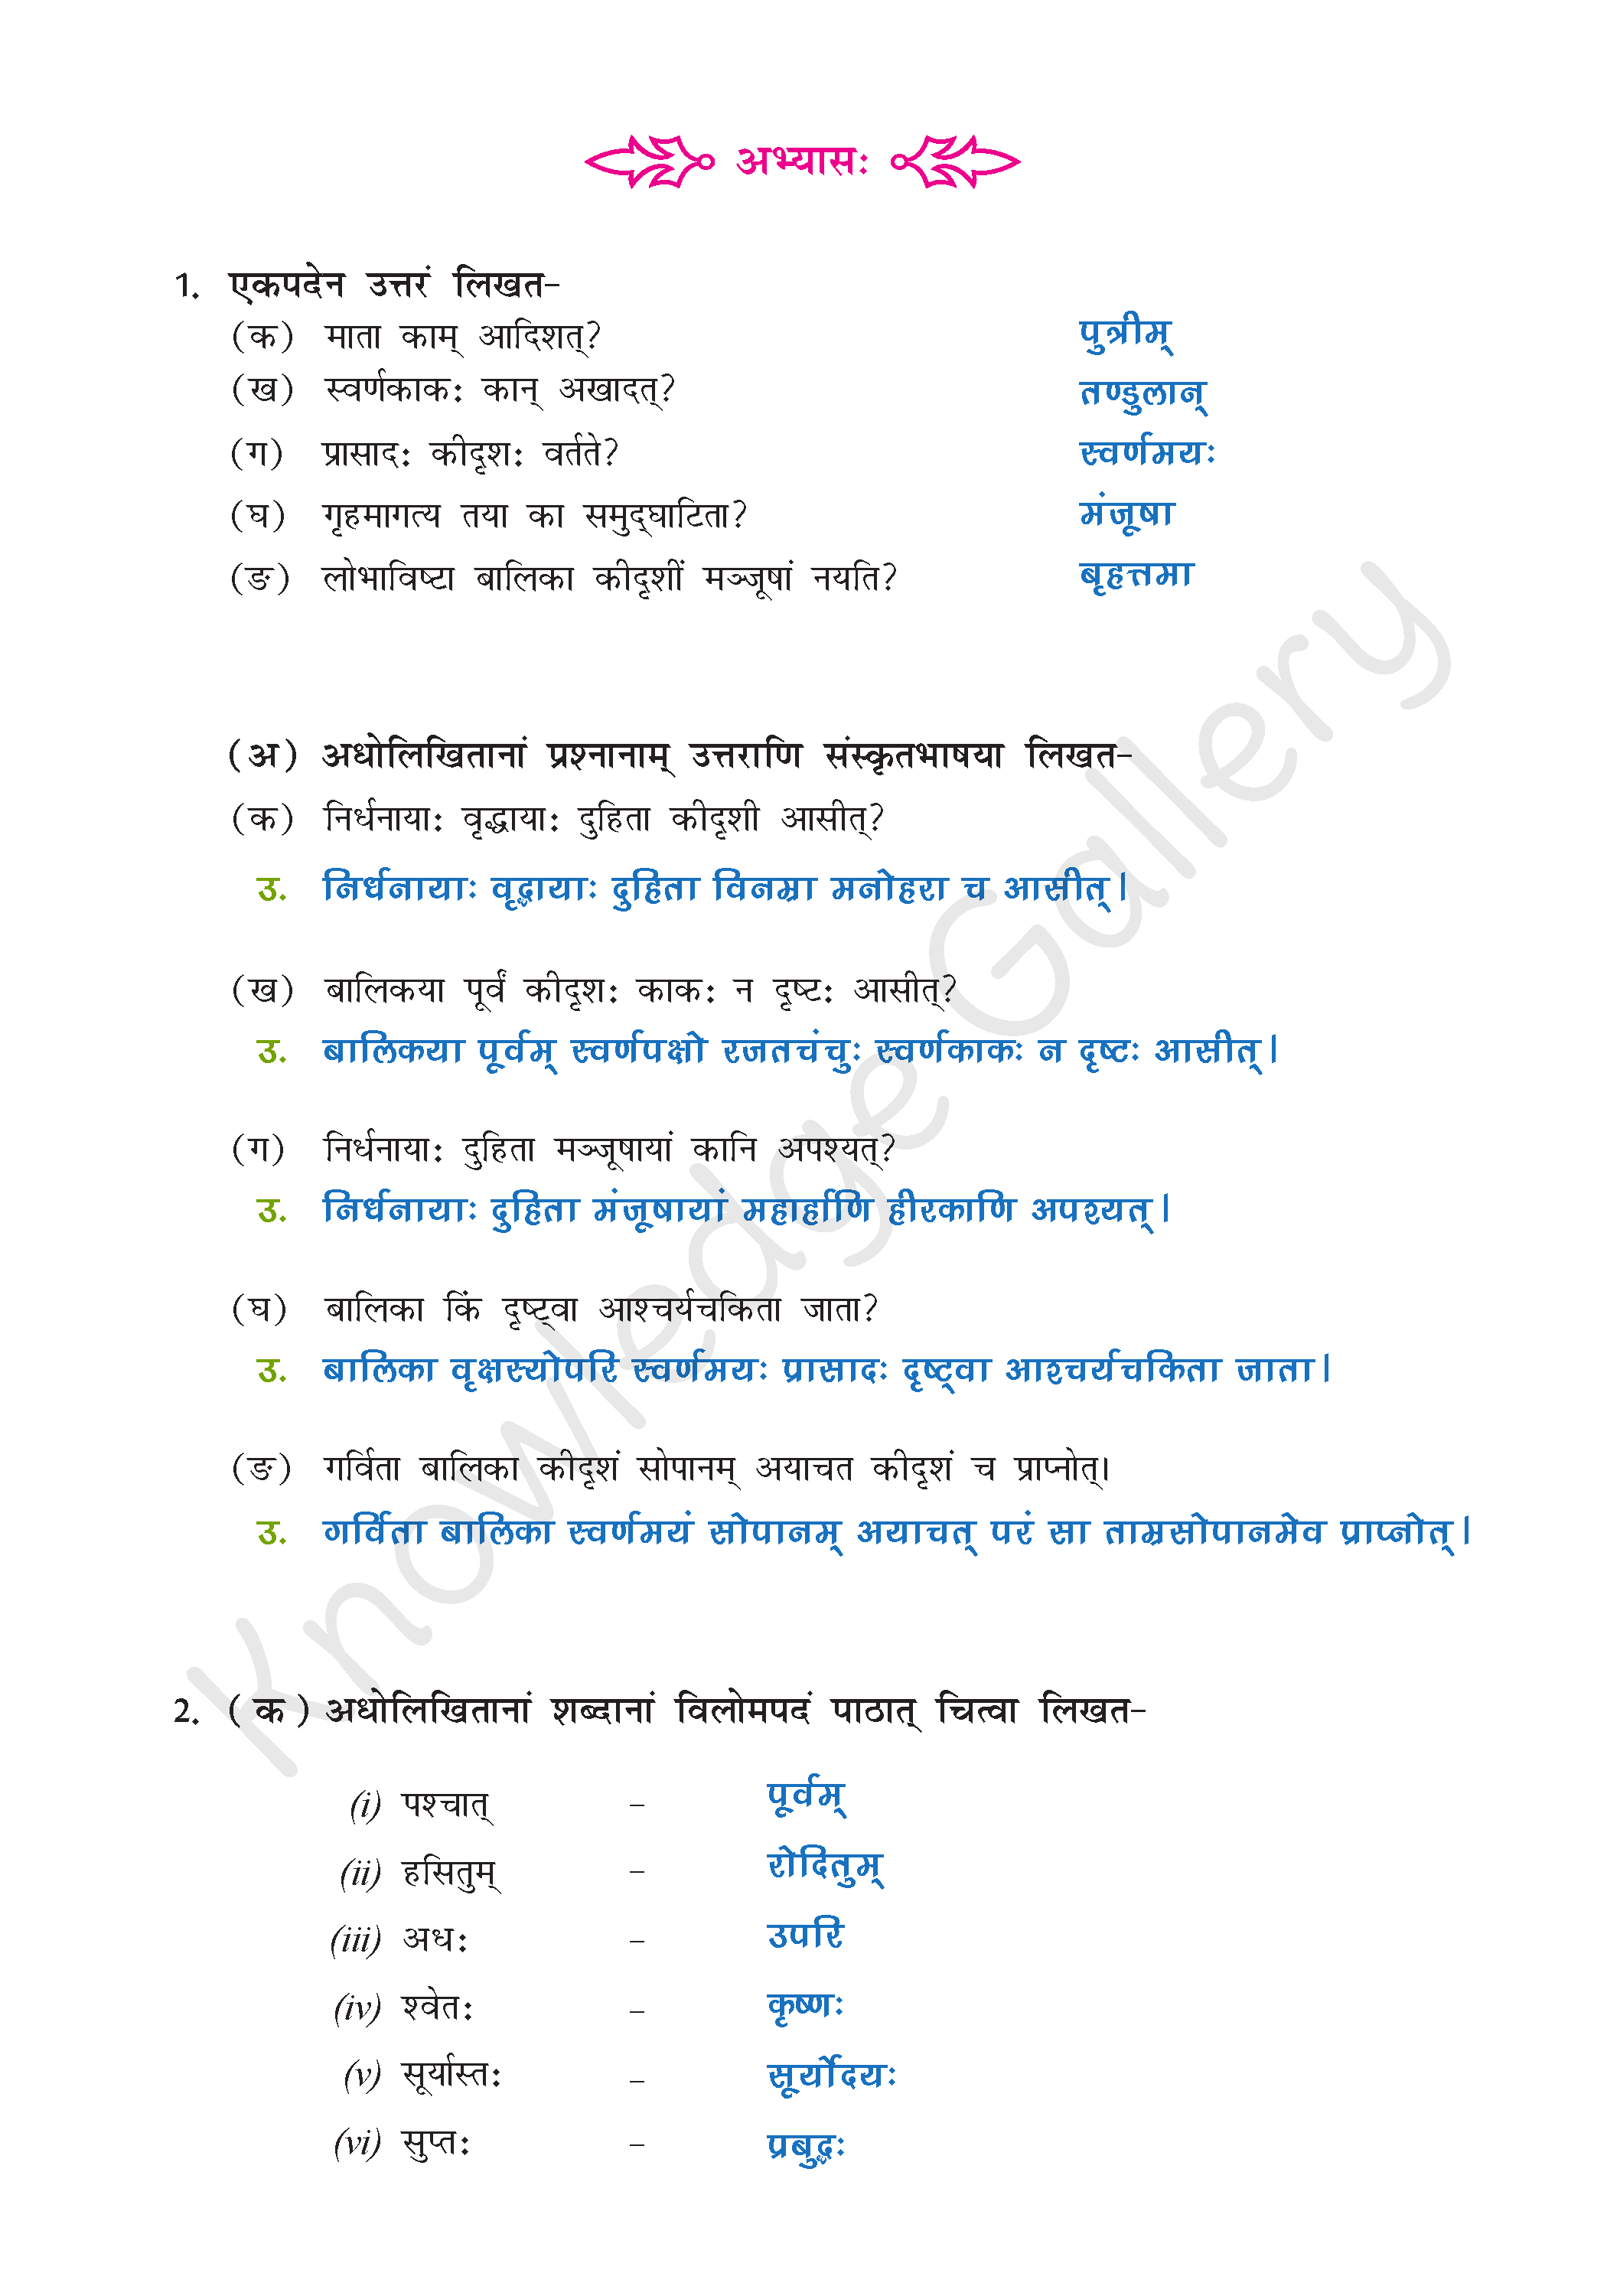 NCERT Solution For Class 9 Sanskrit Chapter 2 part 5